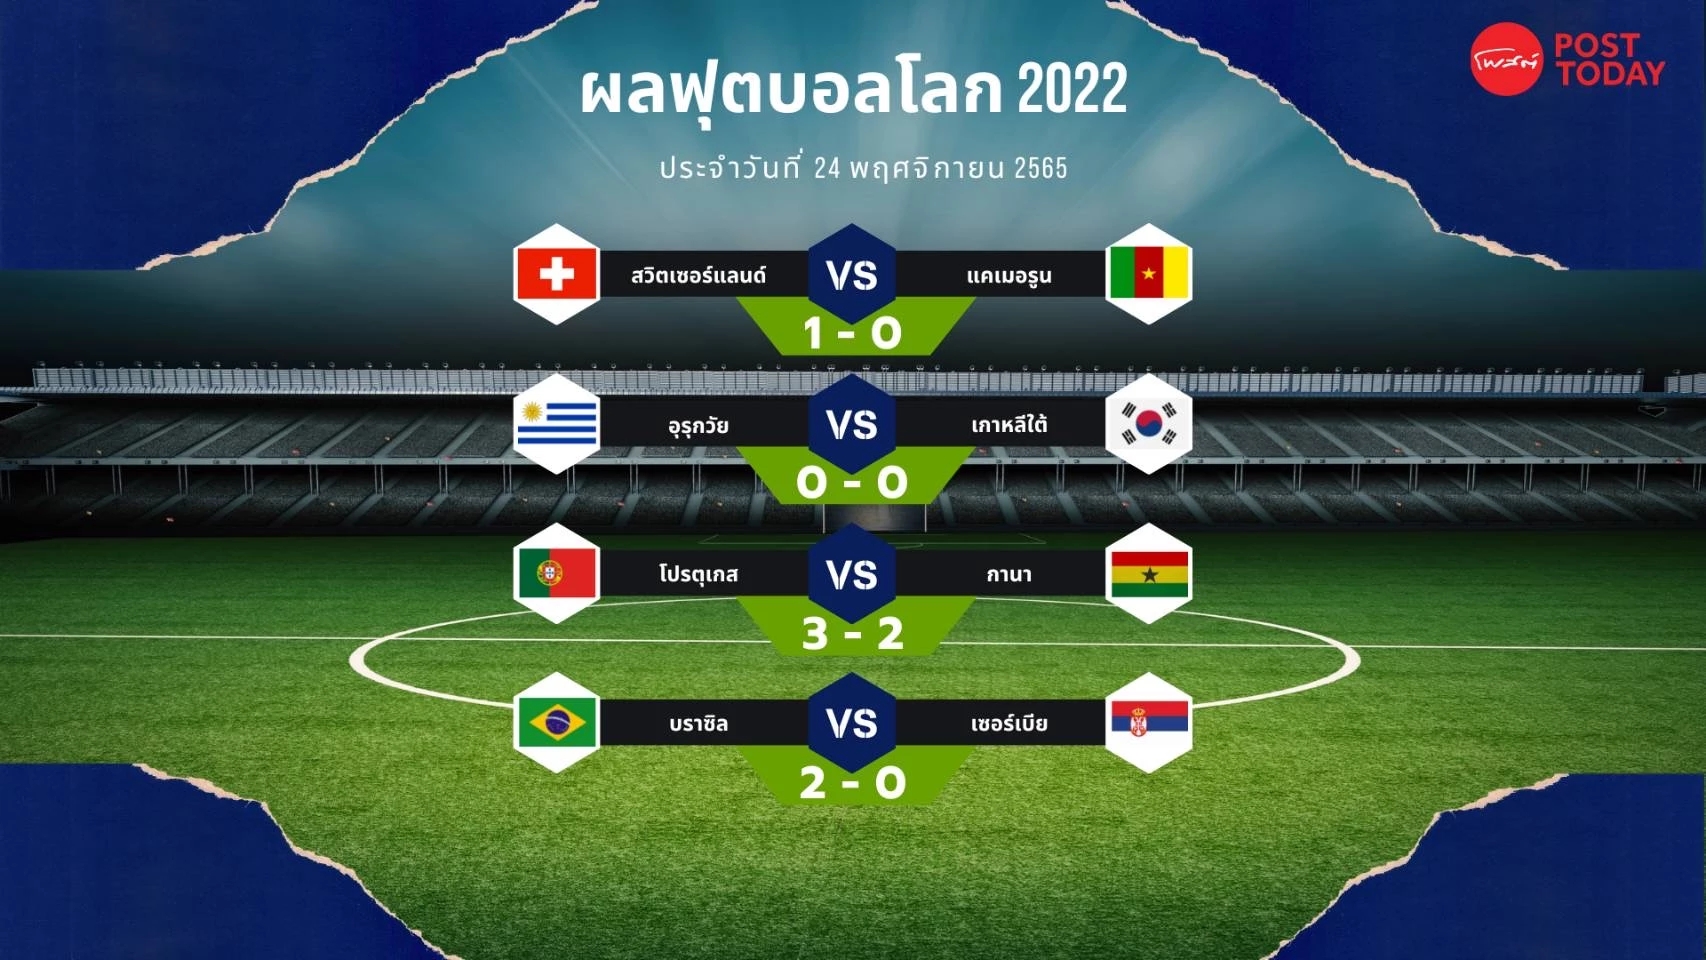 ฟุตบอลโลก 2022 โรนัลโด้พาโปรตุเกสคว้าชัยเหนือกานา 3-2